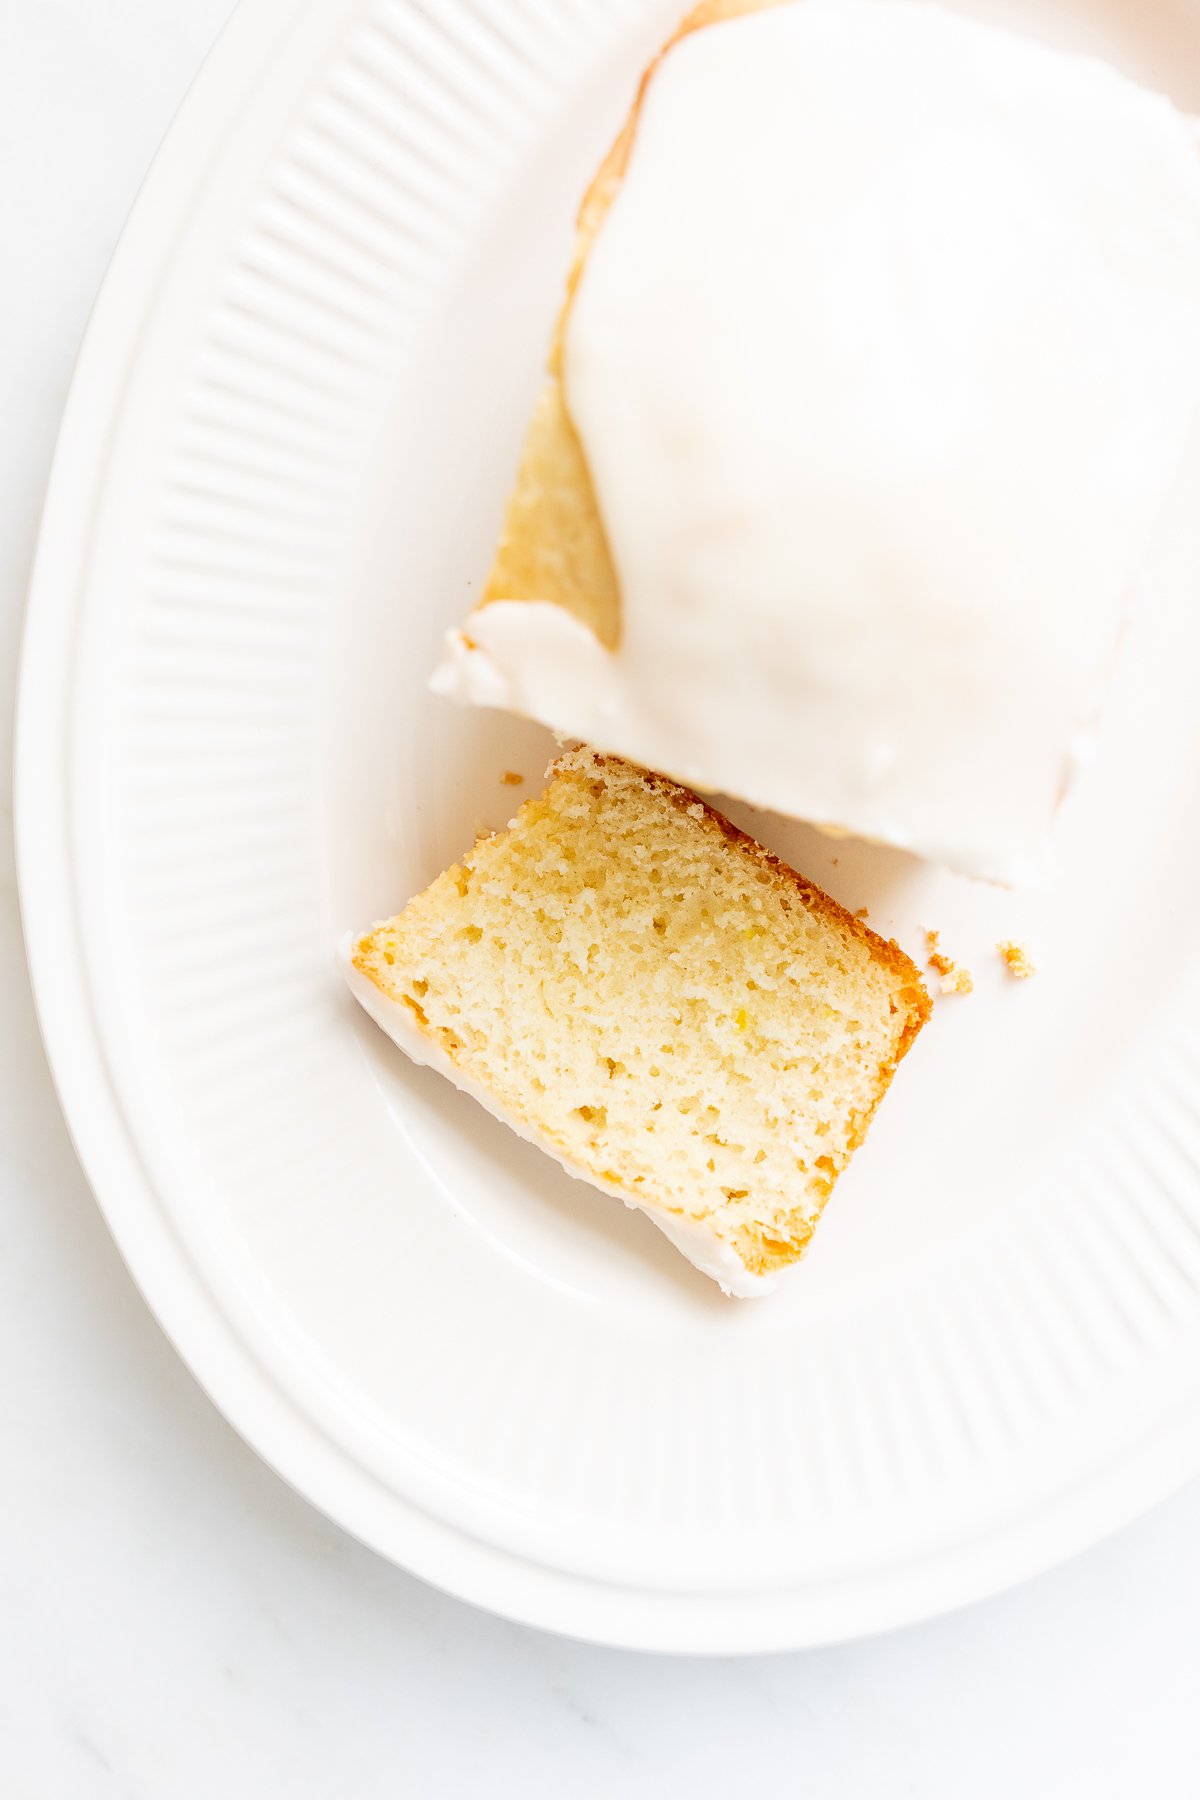 A sliced lemon cake with lemon glaze on a white oval plate.